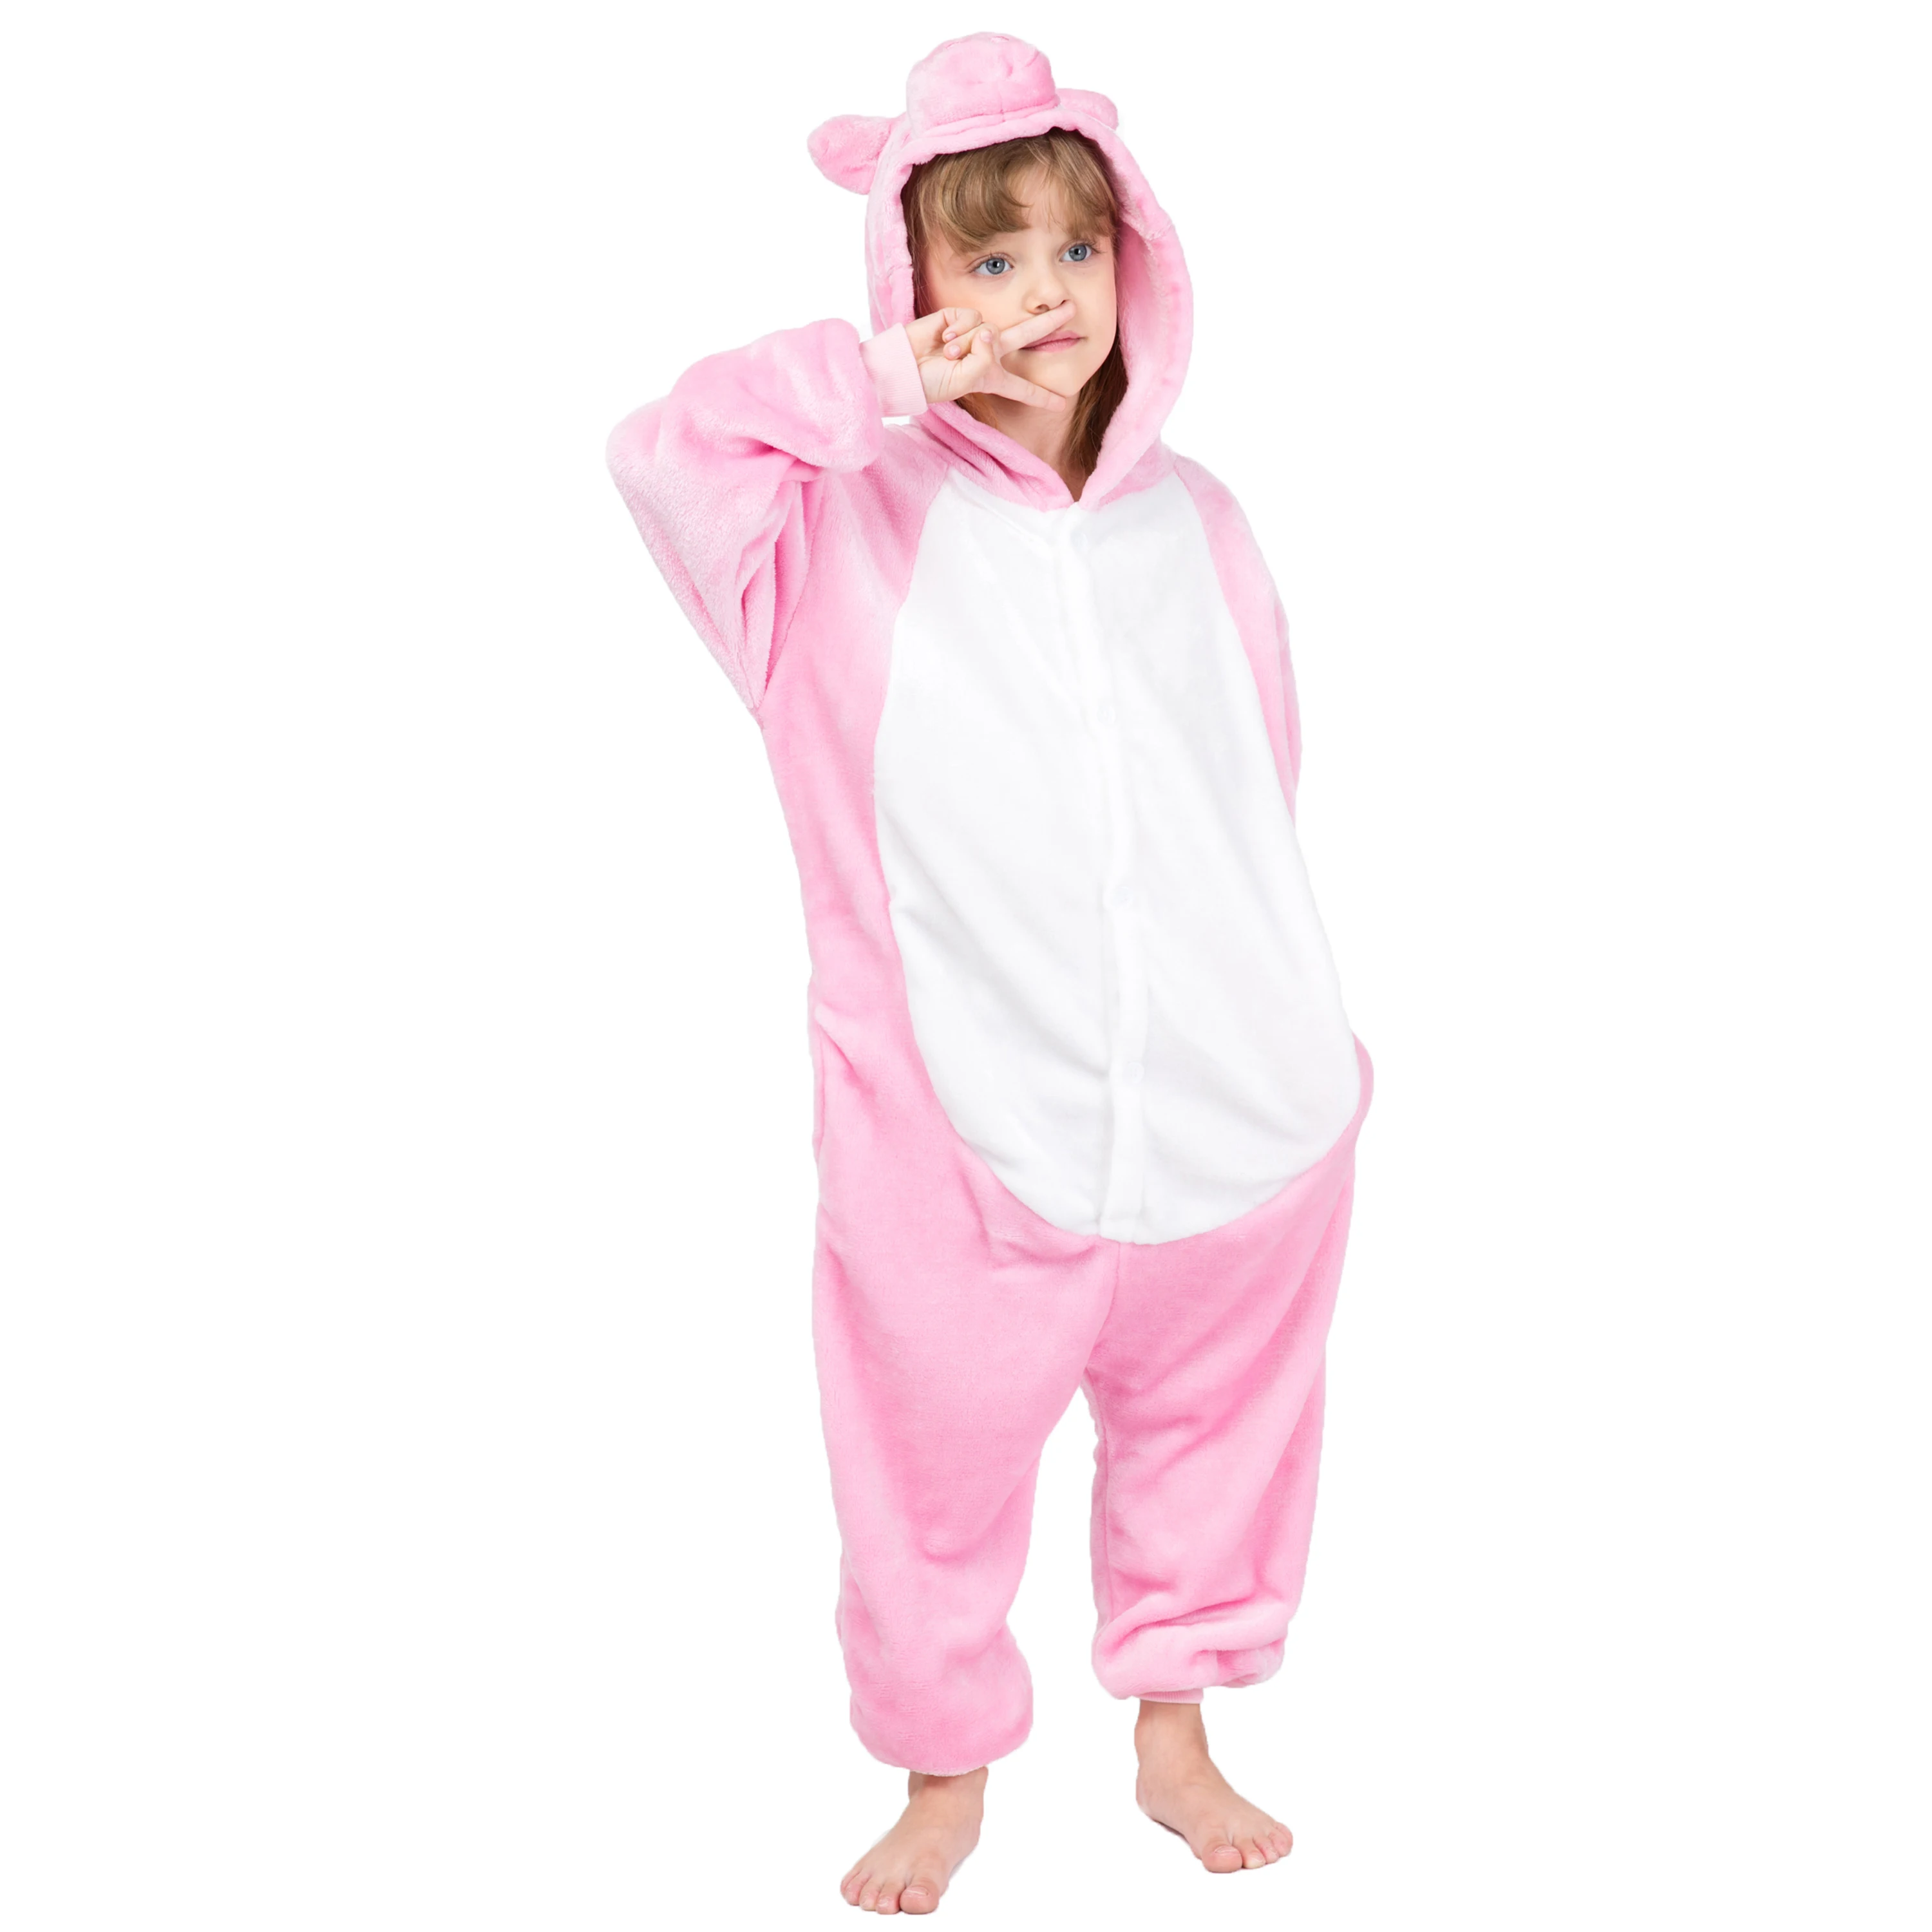 

Wholesale Pink Pig Kigurumi Onesie pajamas/Costume Flannel Onesie Pajamas, Picture